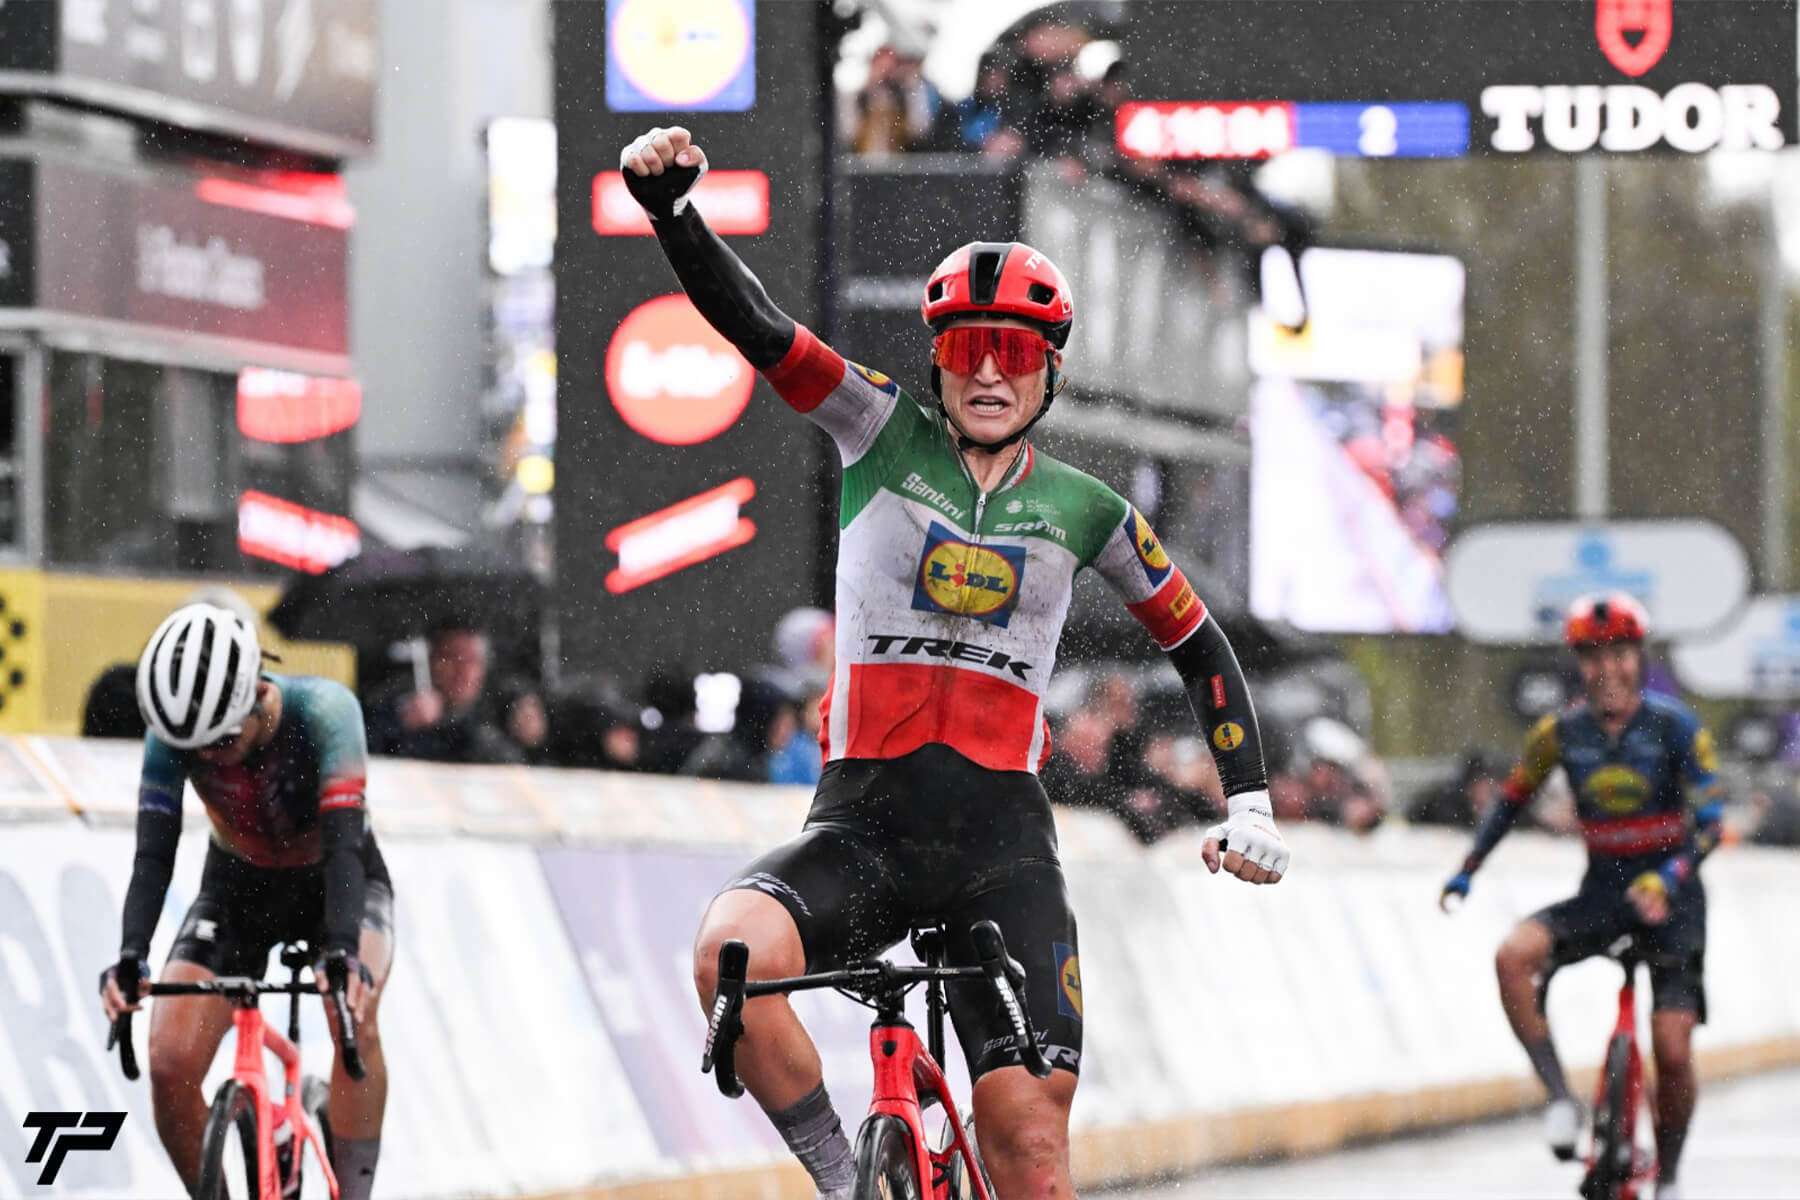 Longo Borghini in tricolore prima al Fiandre: capolavoro Lidl Trek